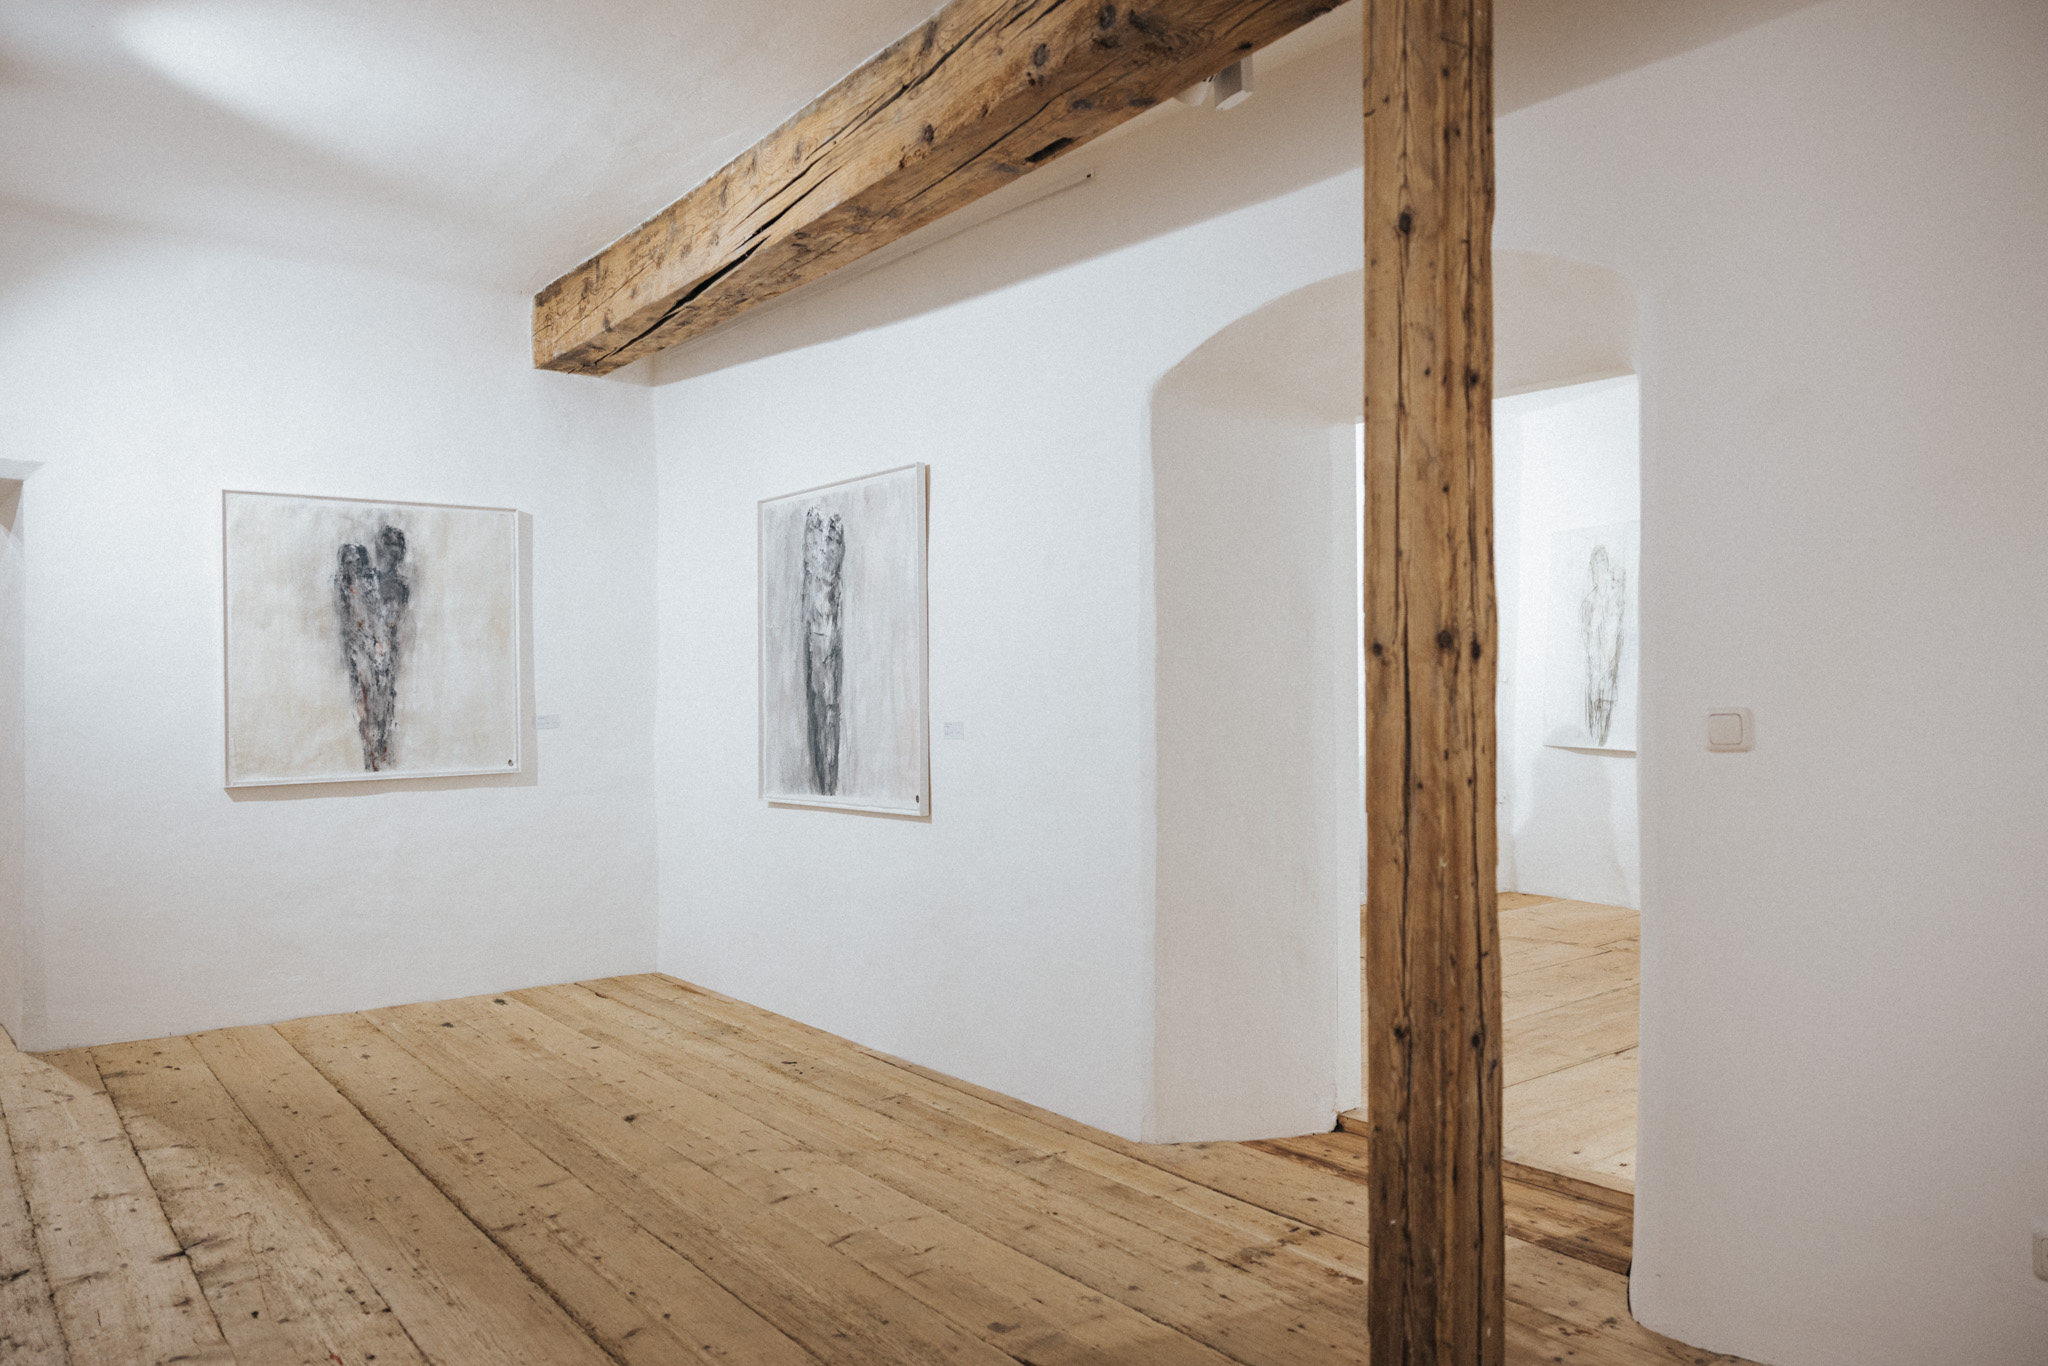 Eröffnung Ausstellung Peter Lohmeyer Kunstraum Burg Golling@Zuparino Niko Zuparic 4166 | Zuparino - Niko Zuparic